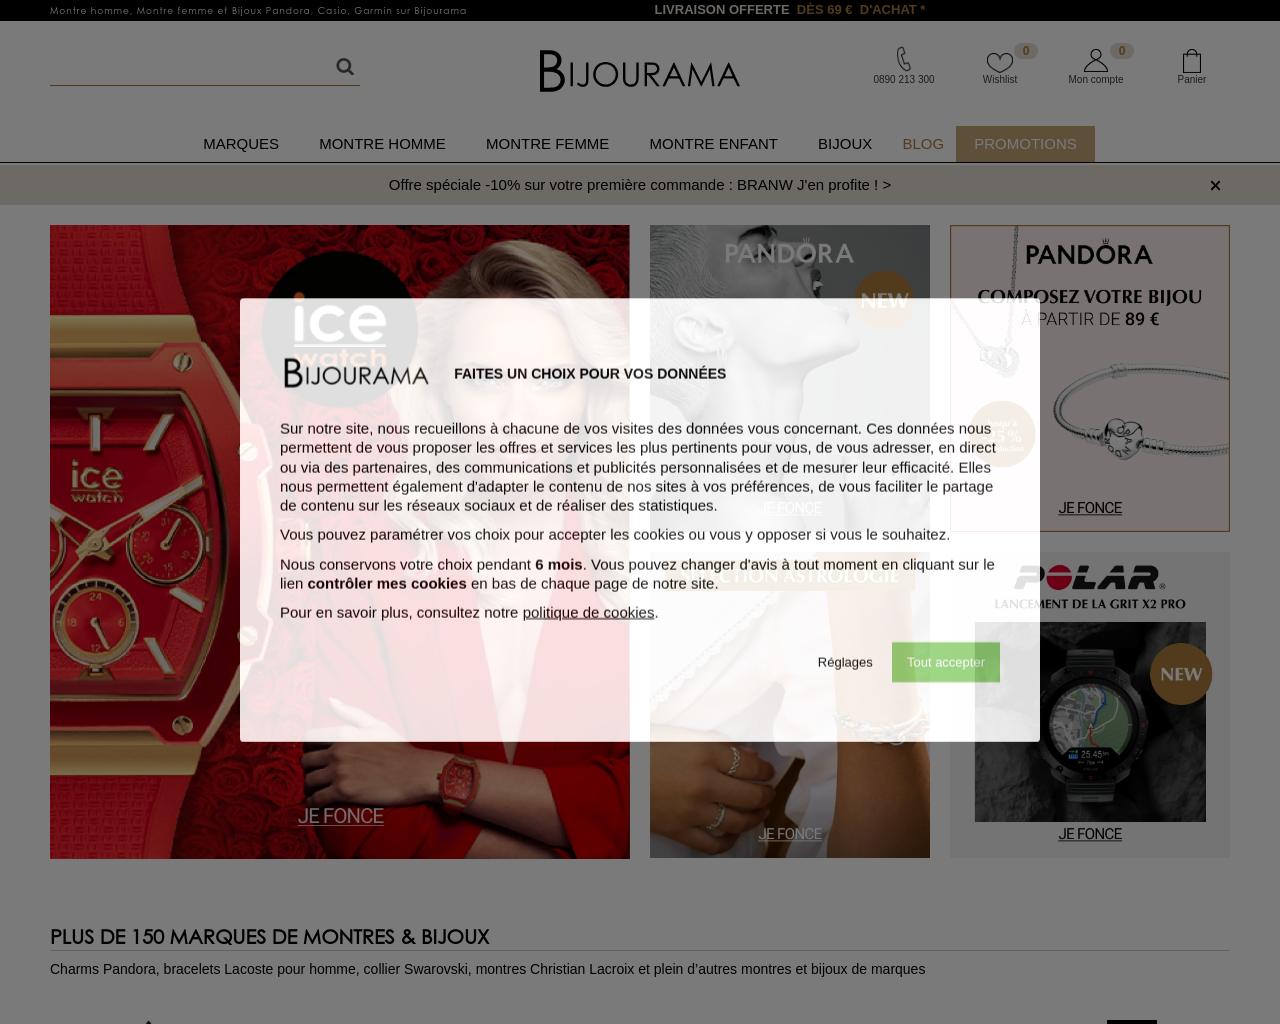 bijourama.com